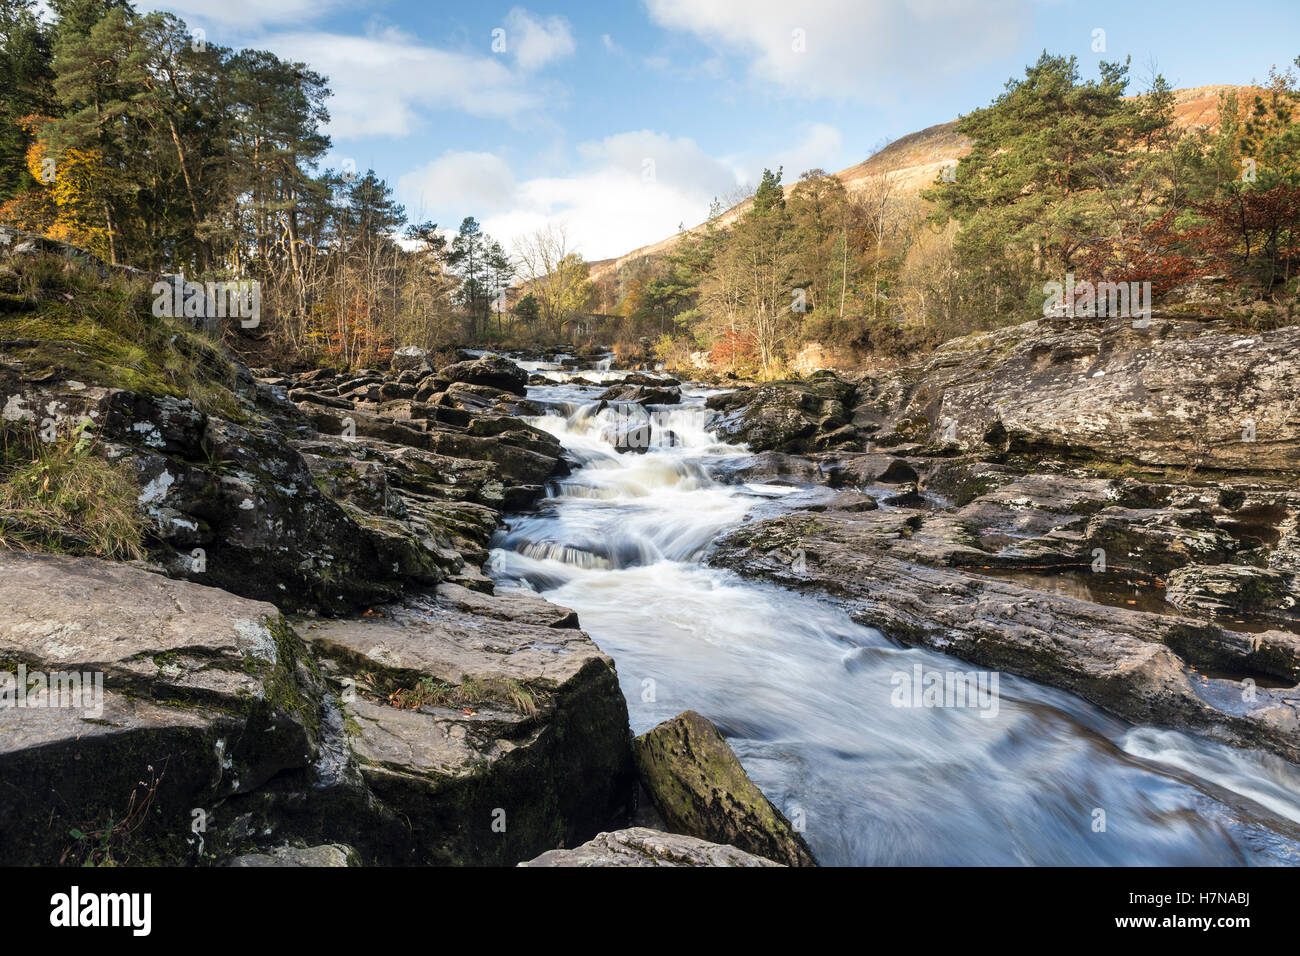 The Falls of Dochart at Killin, Scotland Stock Photo